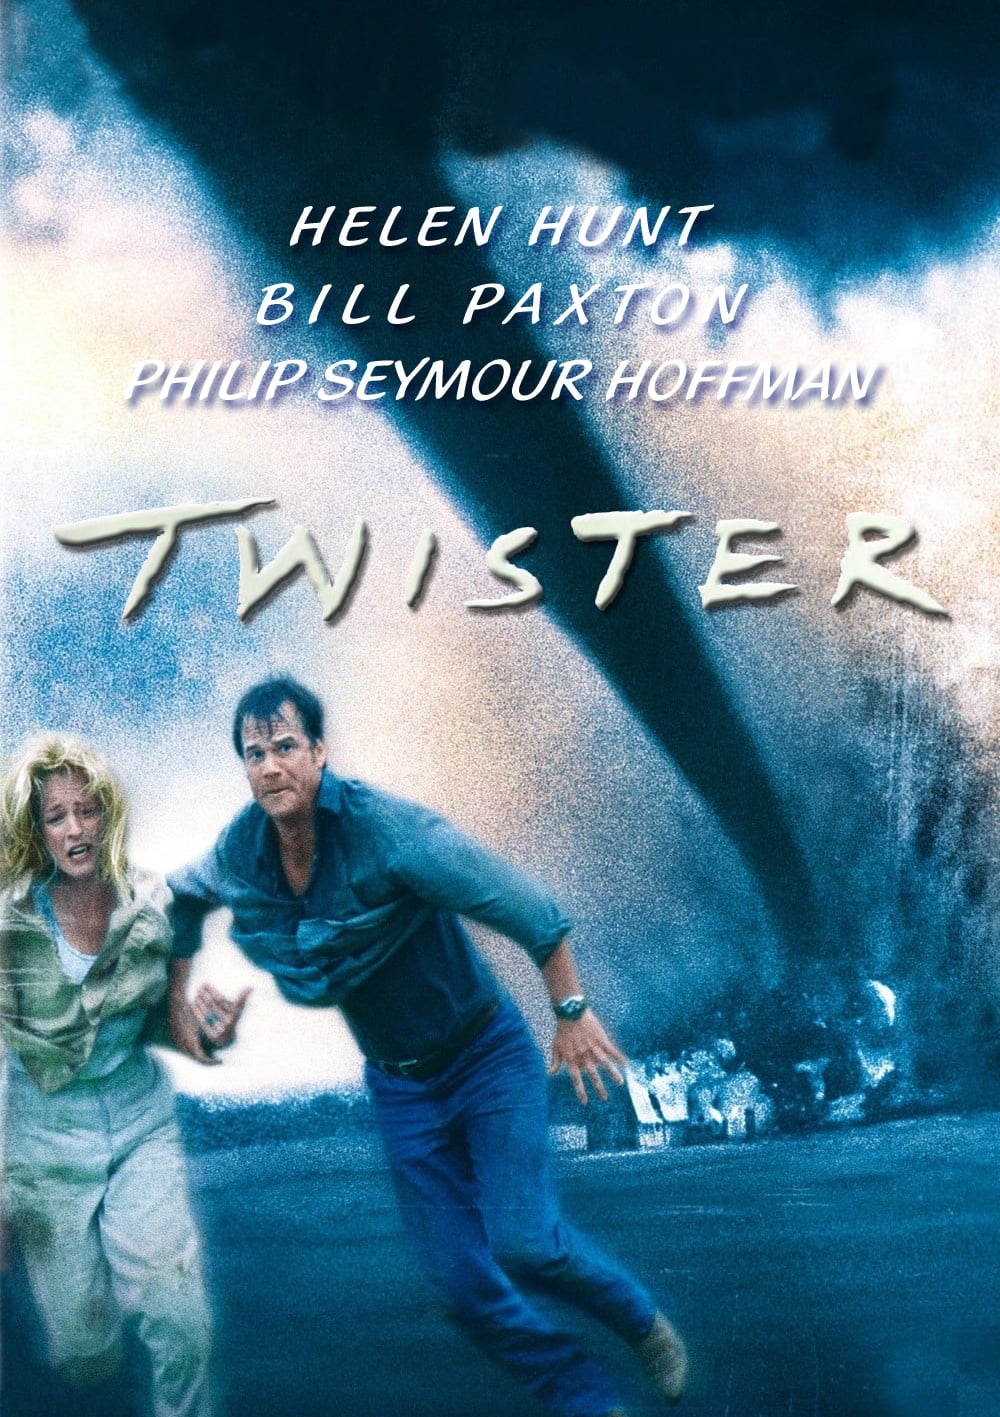 Plakat von "Twister"